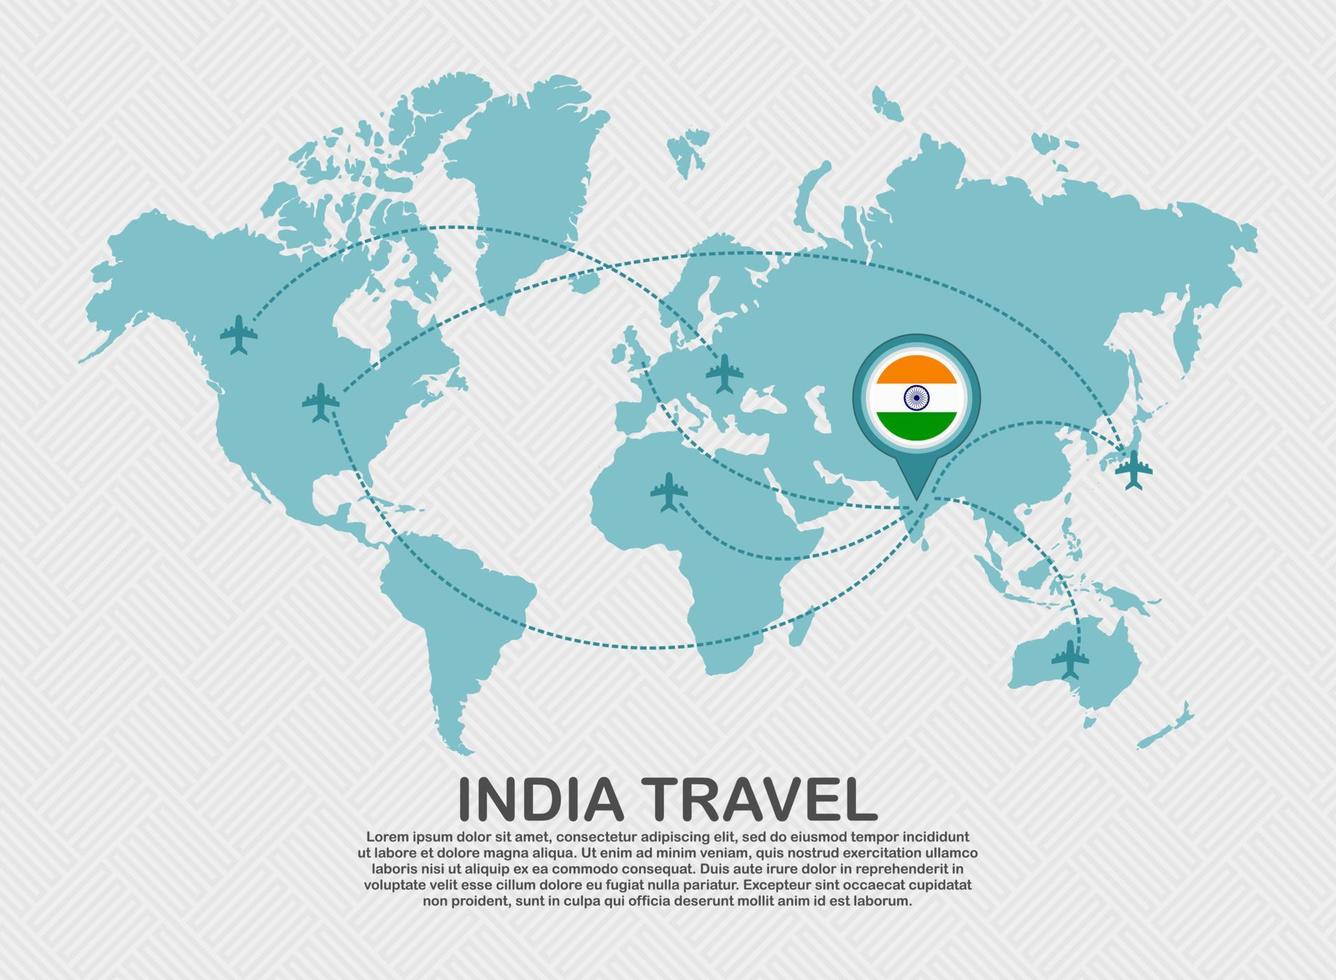 affiche de voyage en inde avec carte du monde et itinéraire d'avion volant fond d'affaires concept de destination touristique.eps vecteur